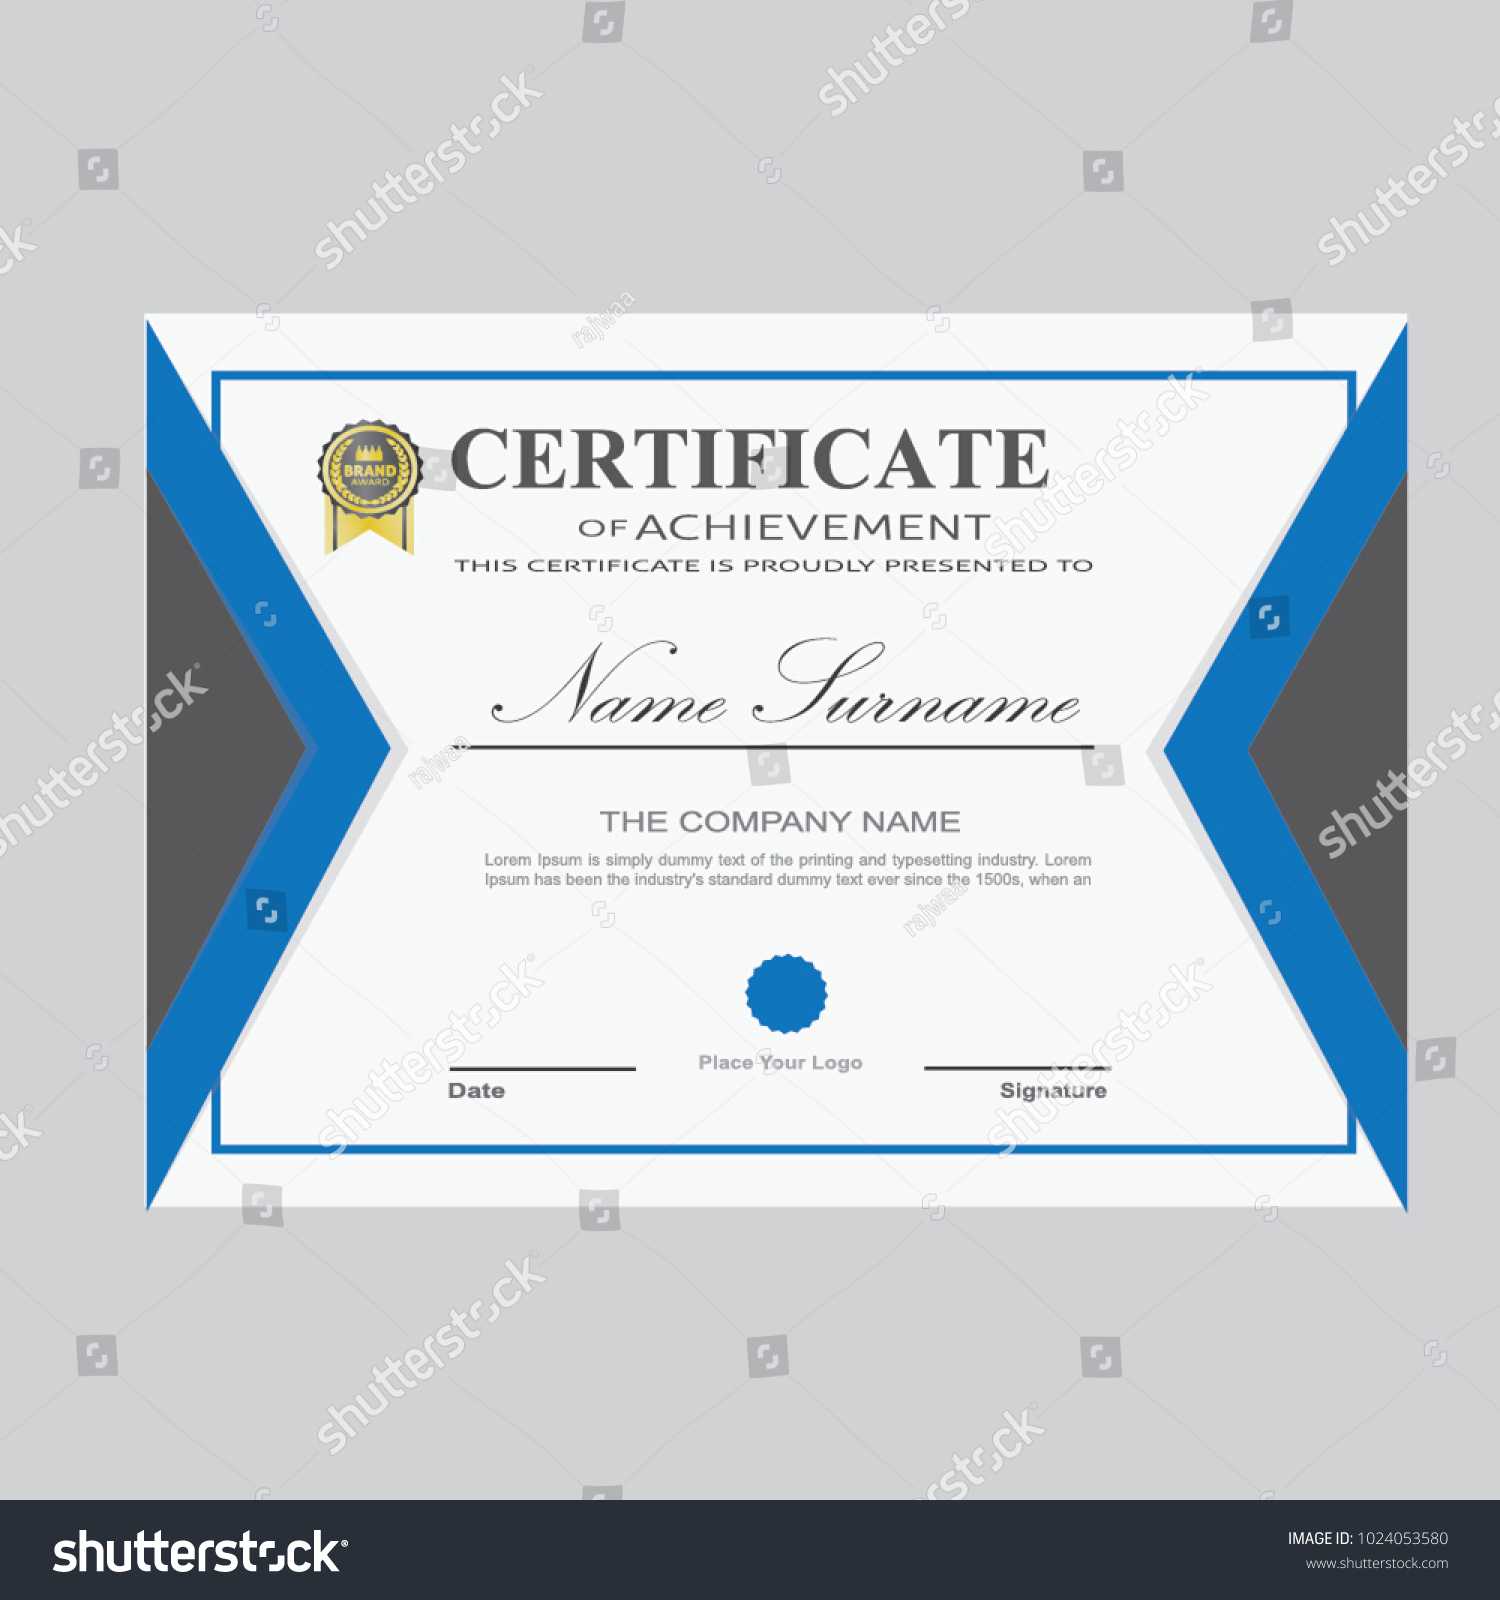 Certificate Template Modern A4 Horizontal Landscape Pertaining To Landscape Certificate Templates